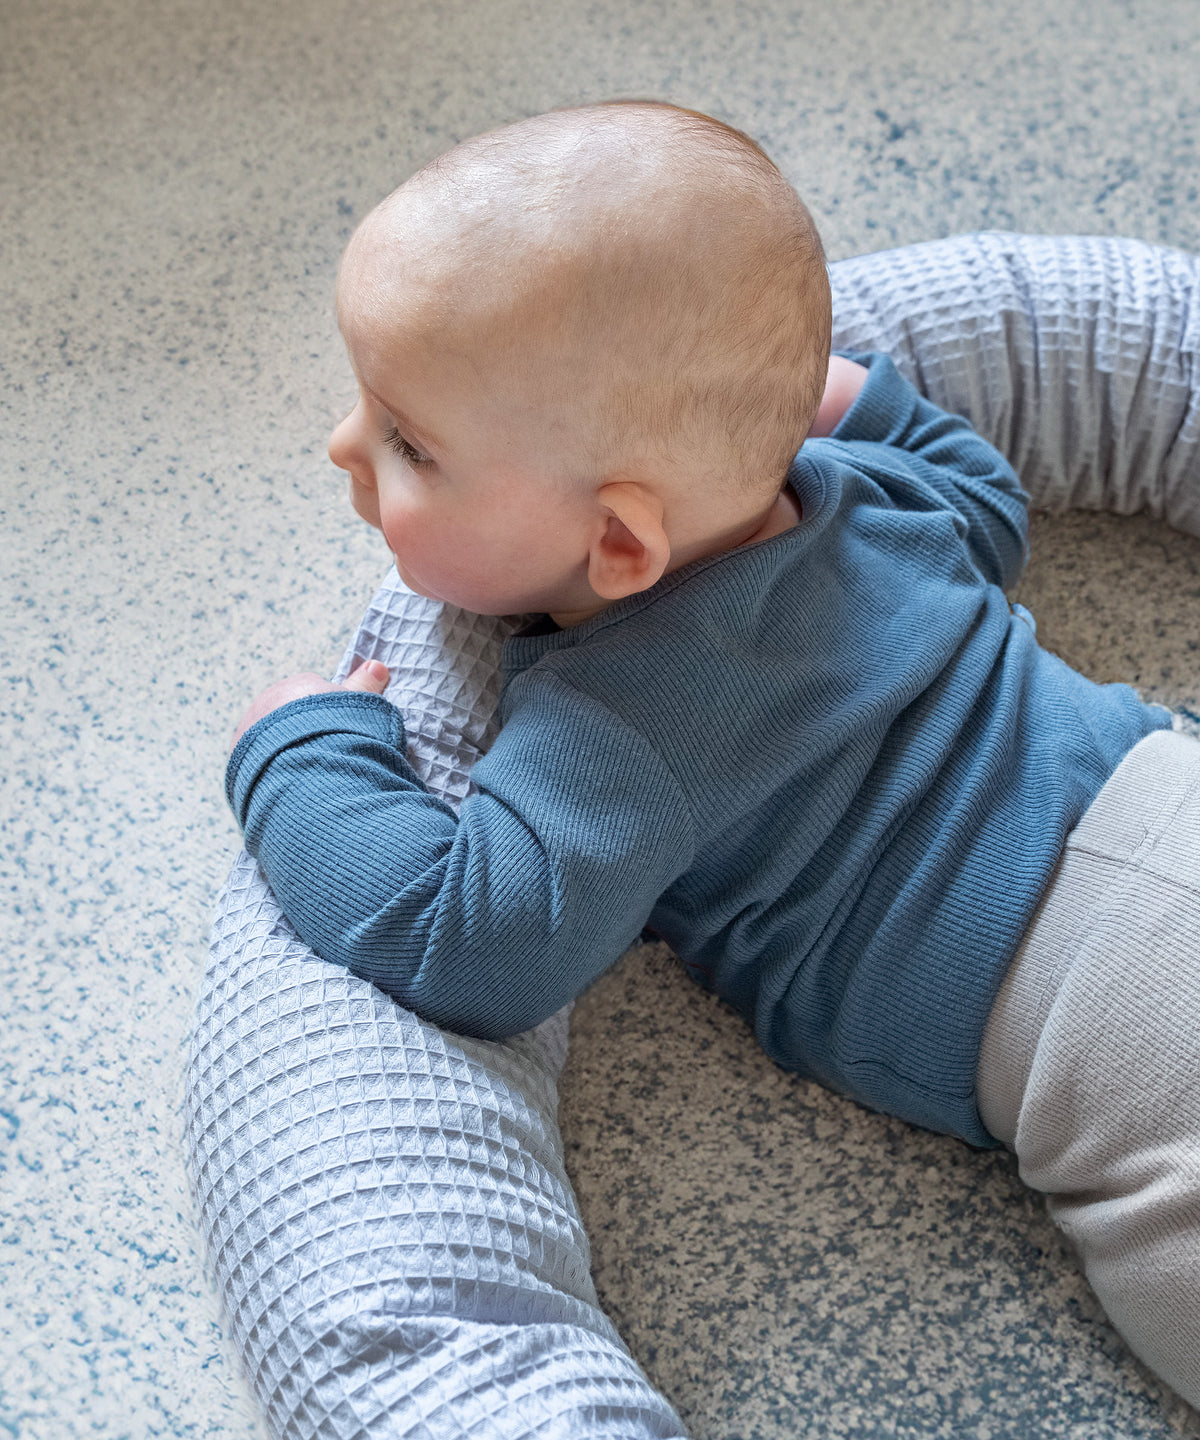 Baby liegt mit Bettschlange auf Teppichboden.